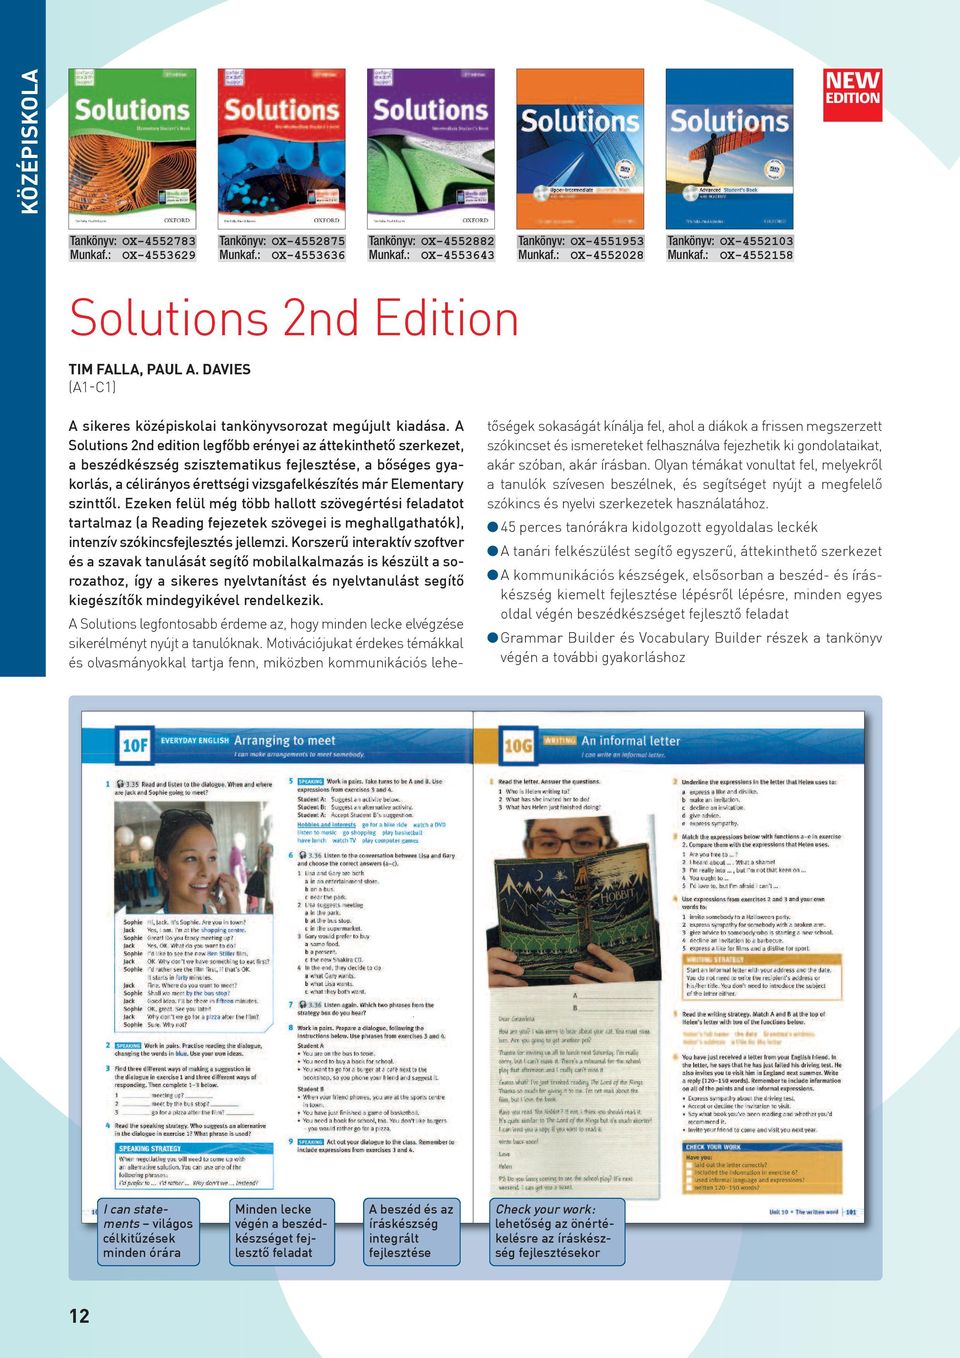 A Solutions 2nd edition legfôbb erényei az áttekinthetô szerkezet, a beszédkészség szisztematikus fejlesztése, a bôséges gyakorlás, a célirányos érettségi vizsgafelkészítés már Elementary szinttôl.